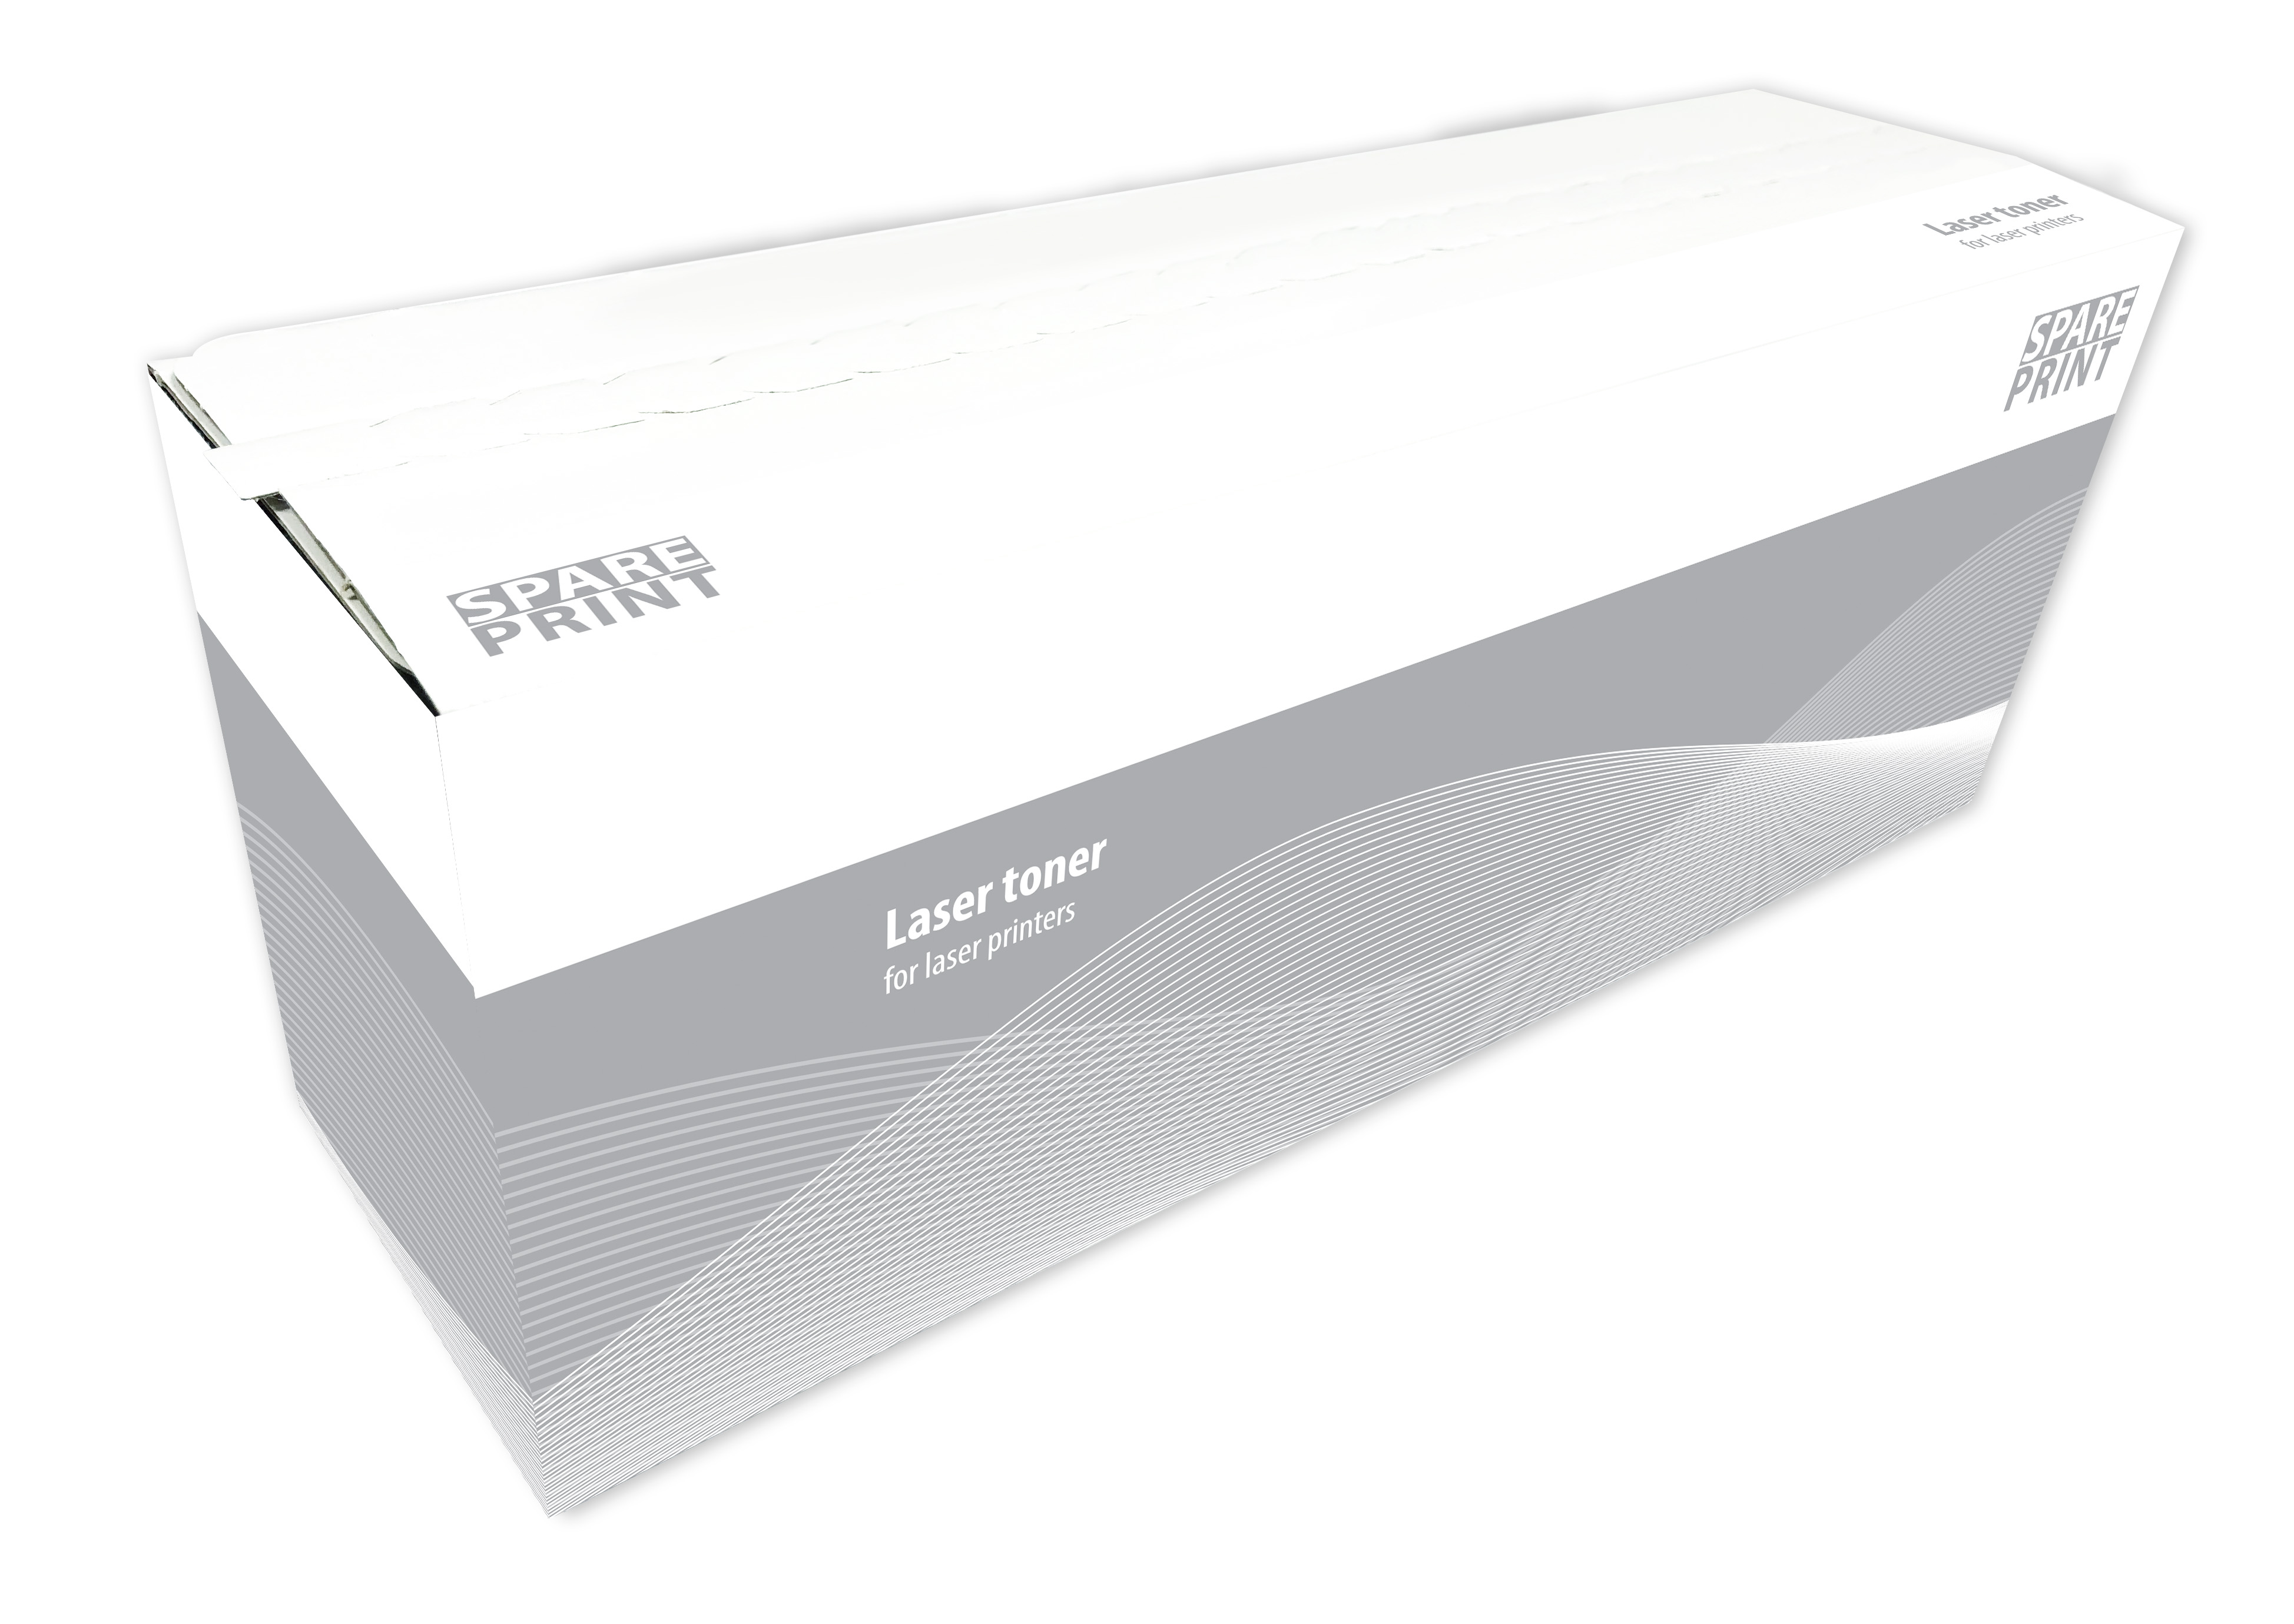 SPARE PRINT kompatibilní toner MLT-D111S Black pro tiskárny Samsung